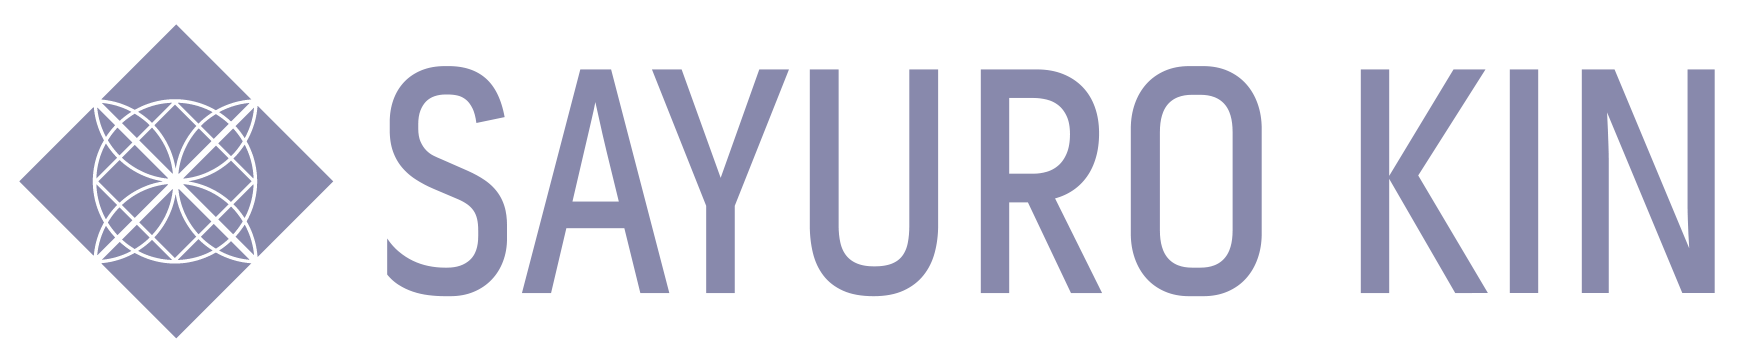 Sayuro.com